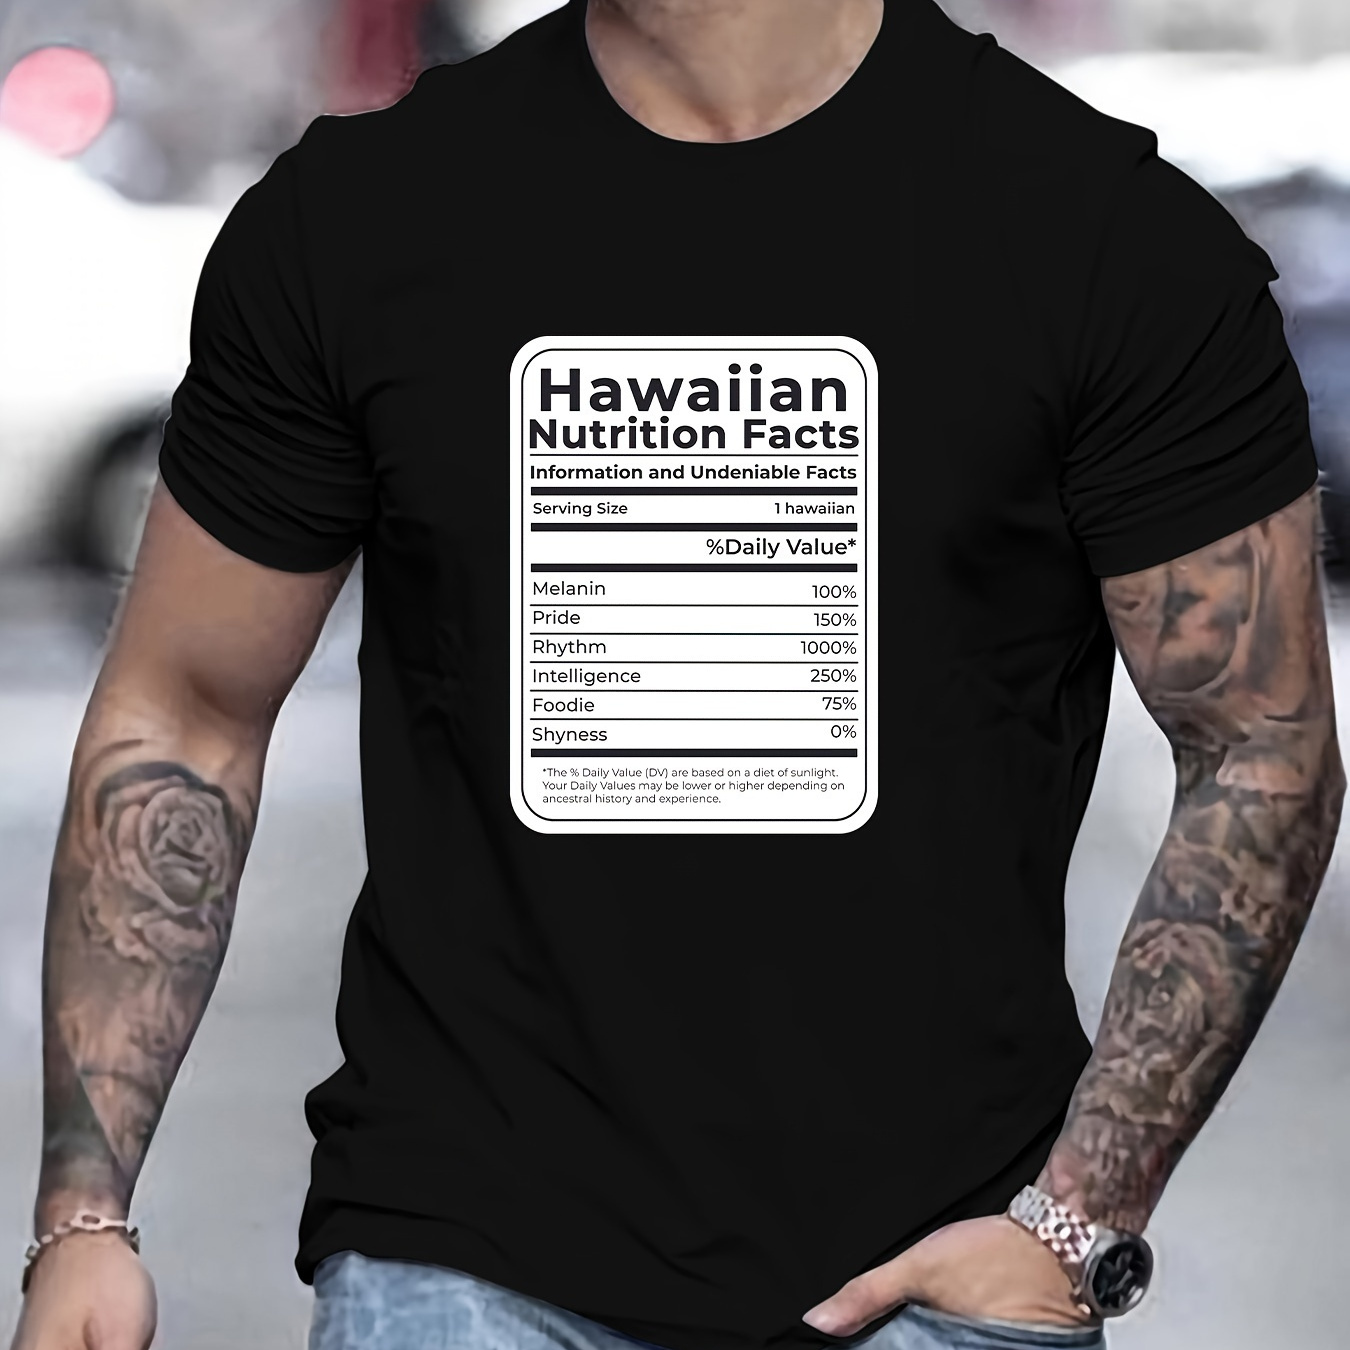 

Men's Hawaiian Print Short Sleeve T-shirts, Comfy Casual Elastic Crew Neck Tops For Men's Outdoor Activities